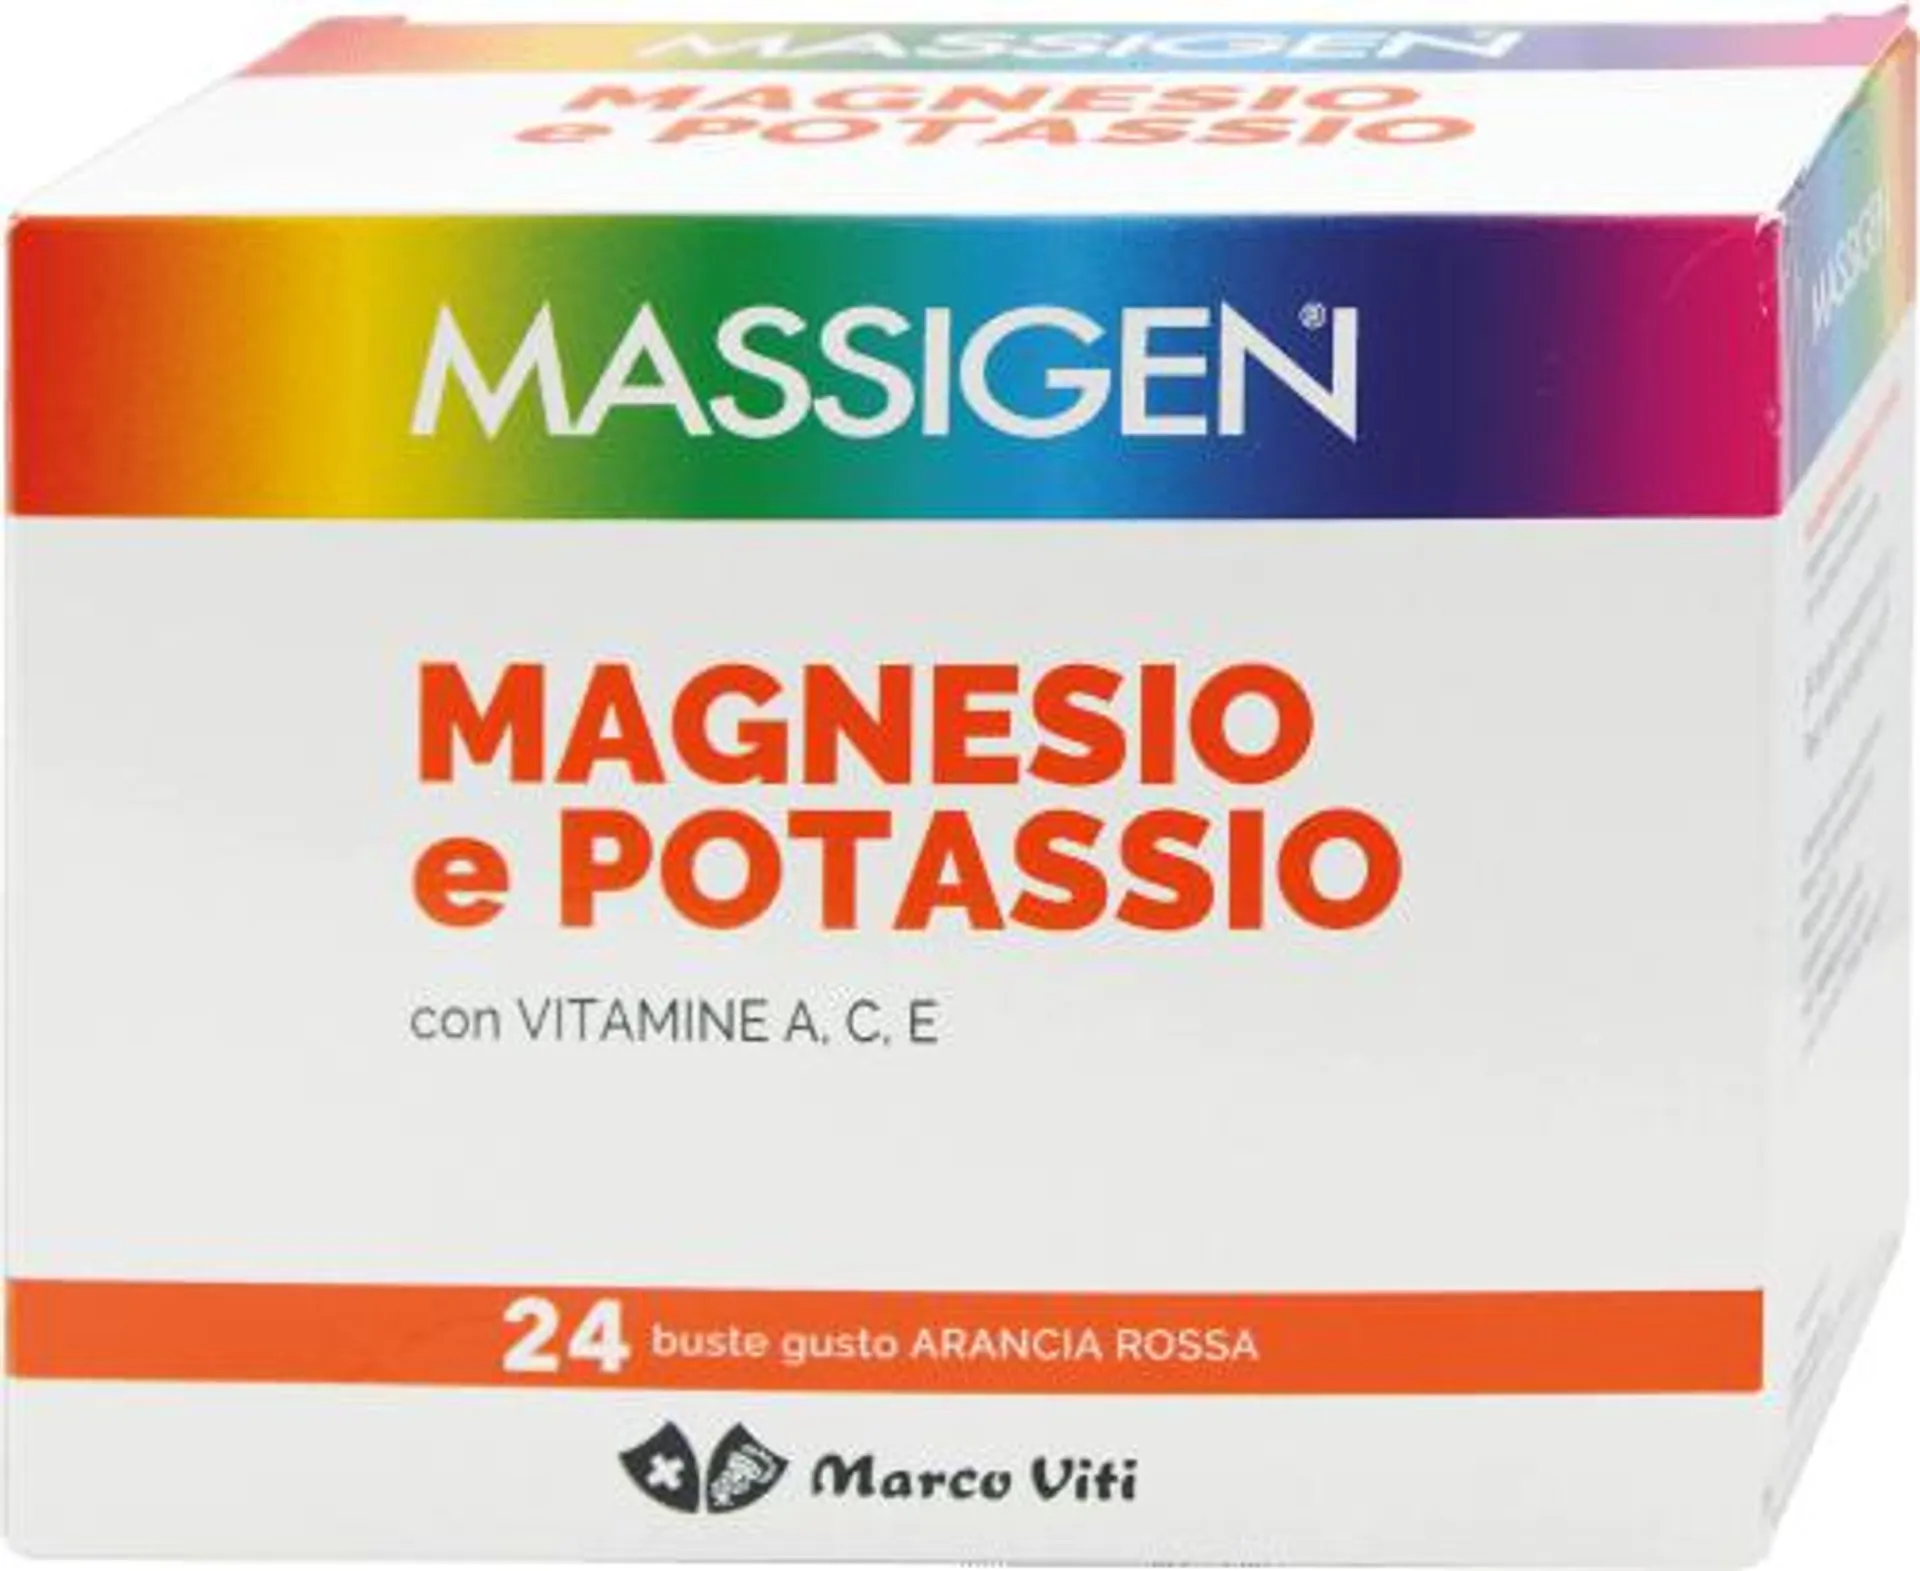 Magnesio e potassio con vitamina A, C, E, 24 pz